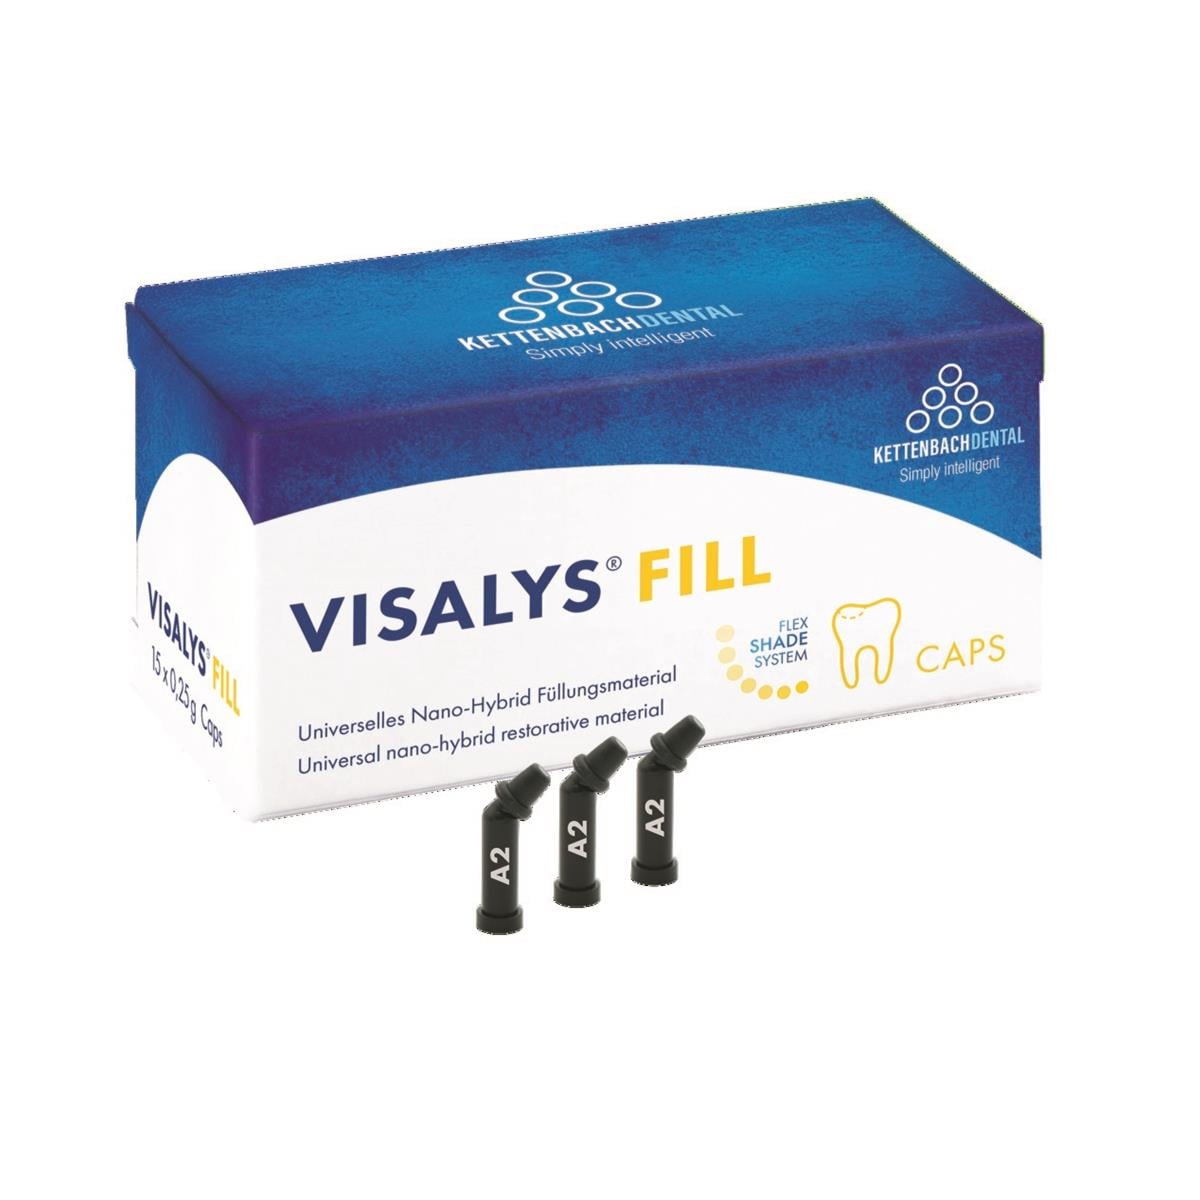 Visalys fill - 15 x 0,25g unidoses - teinte bleach - KETTENBACH